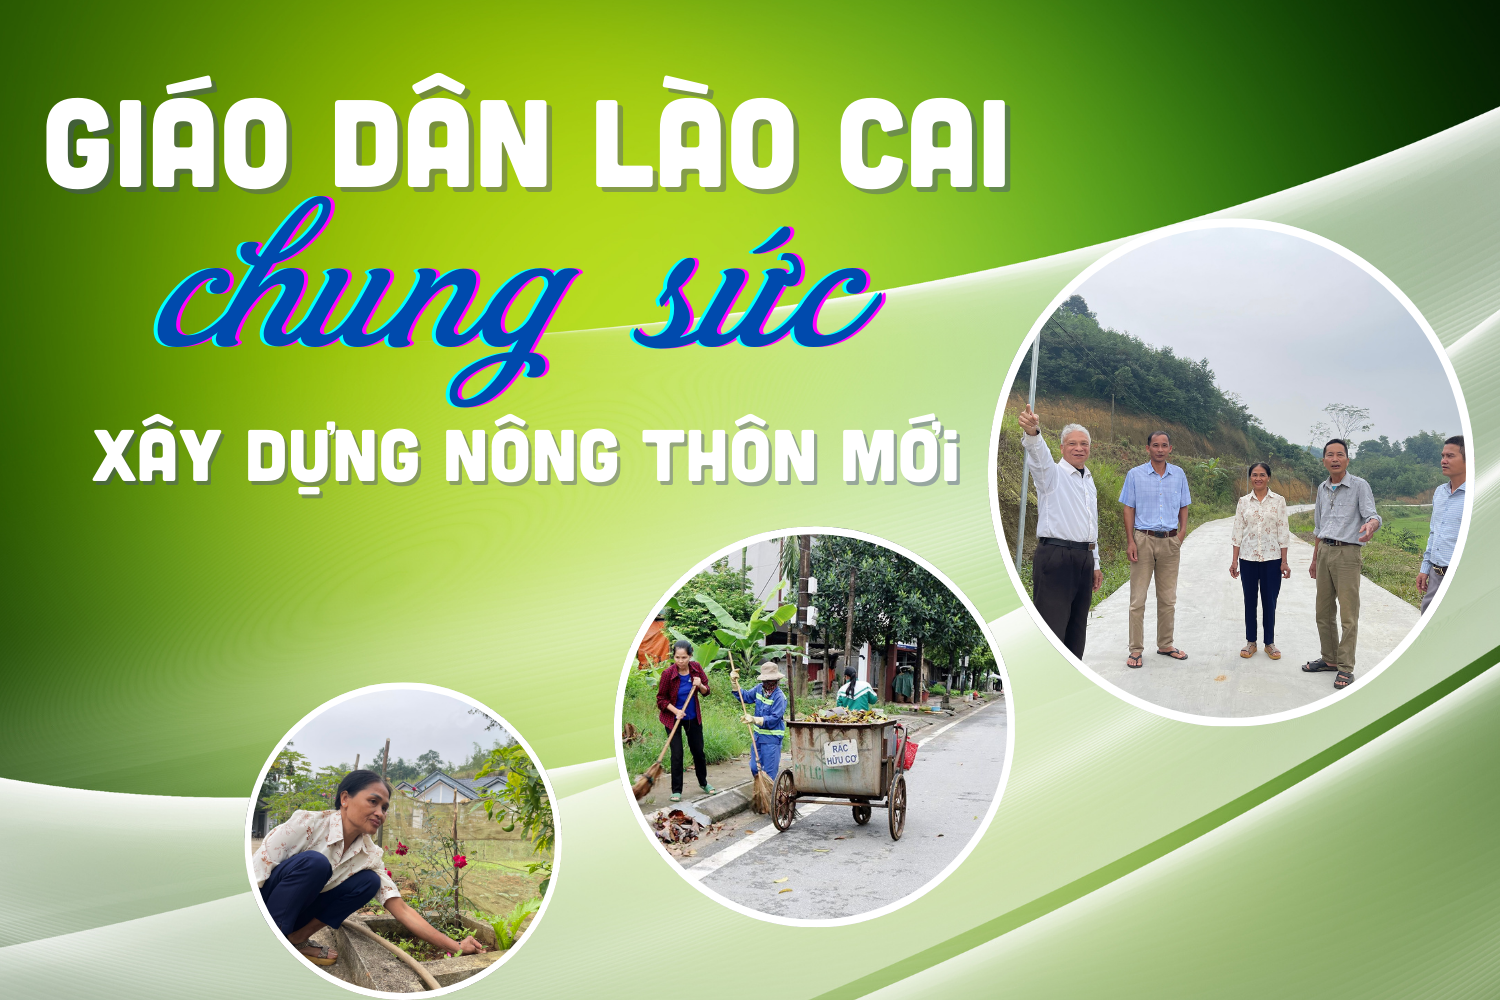 Giáo dân Lào Cai chung sức xây dựng nông thôn mới